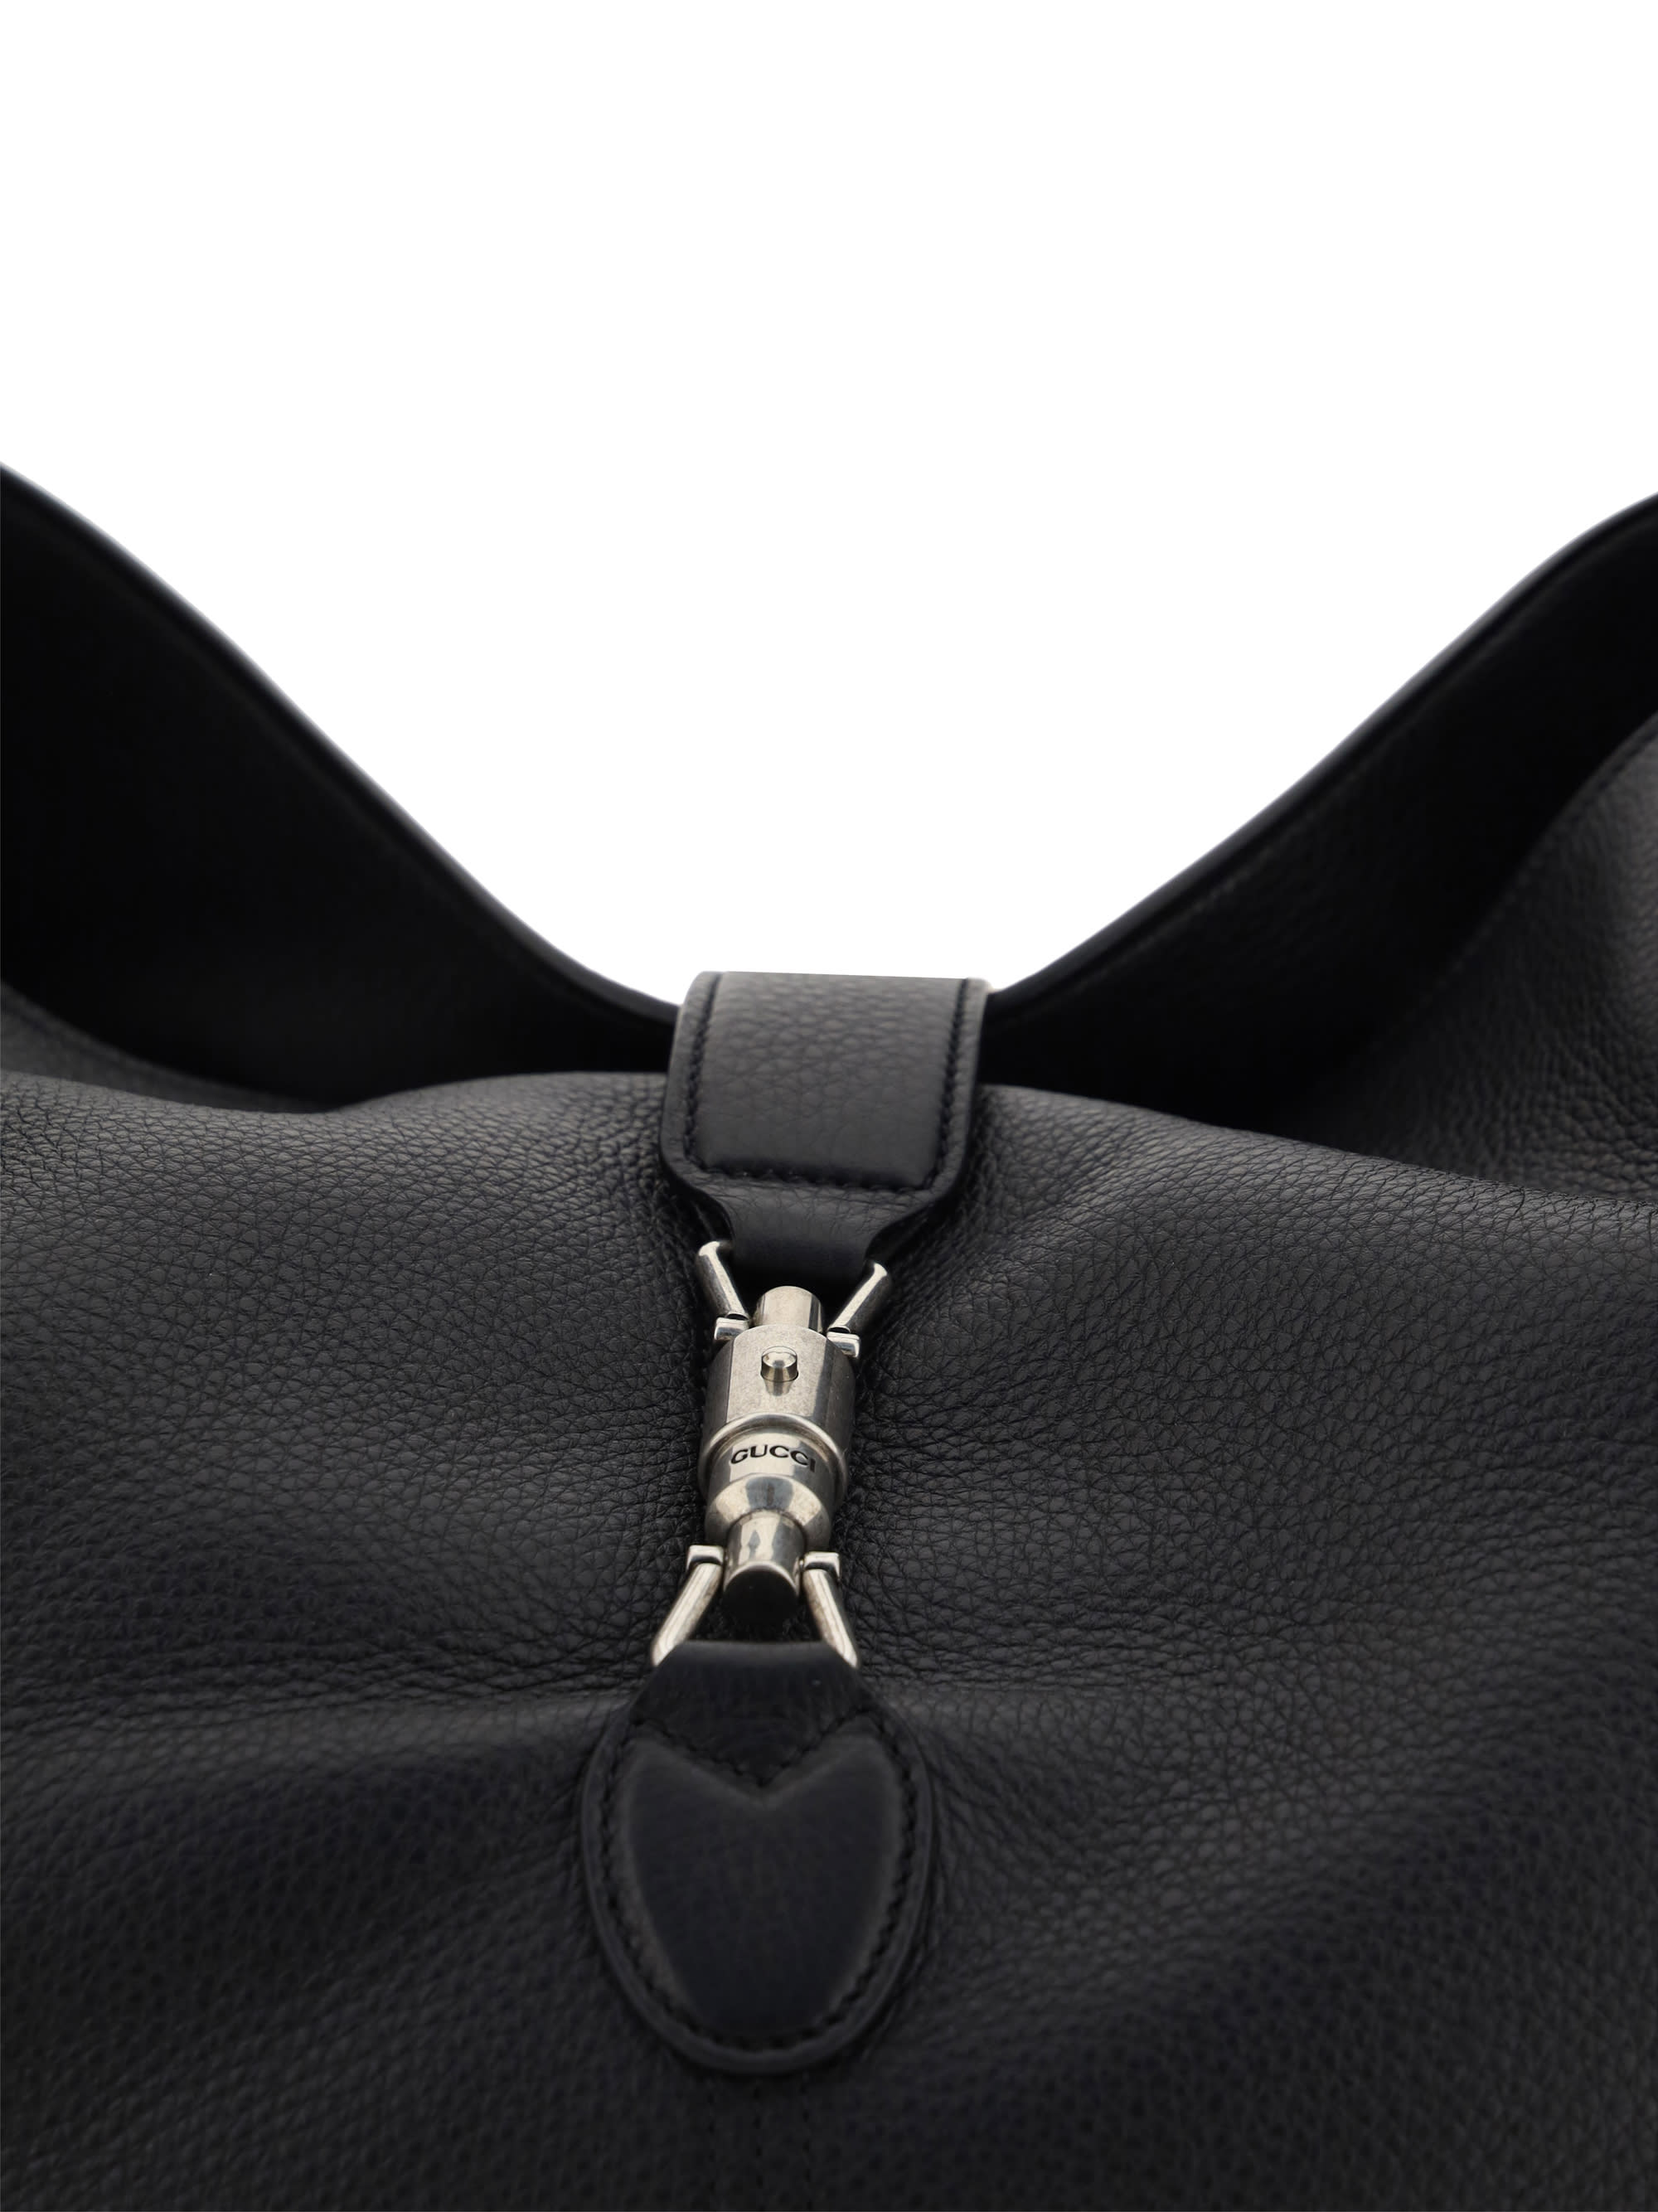 Jackie 1961 medium shoulder bag in Black Leather